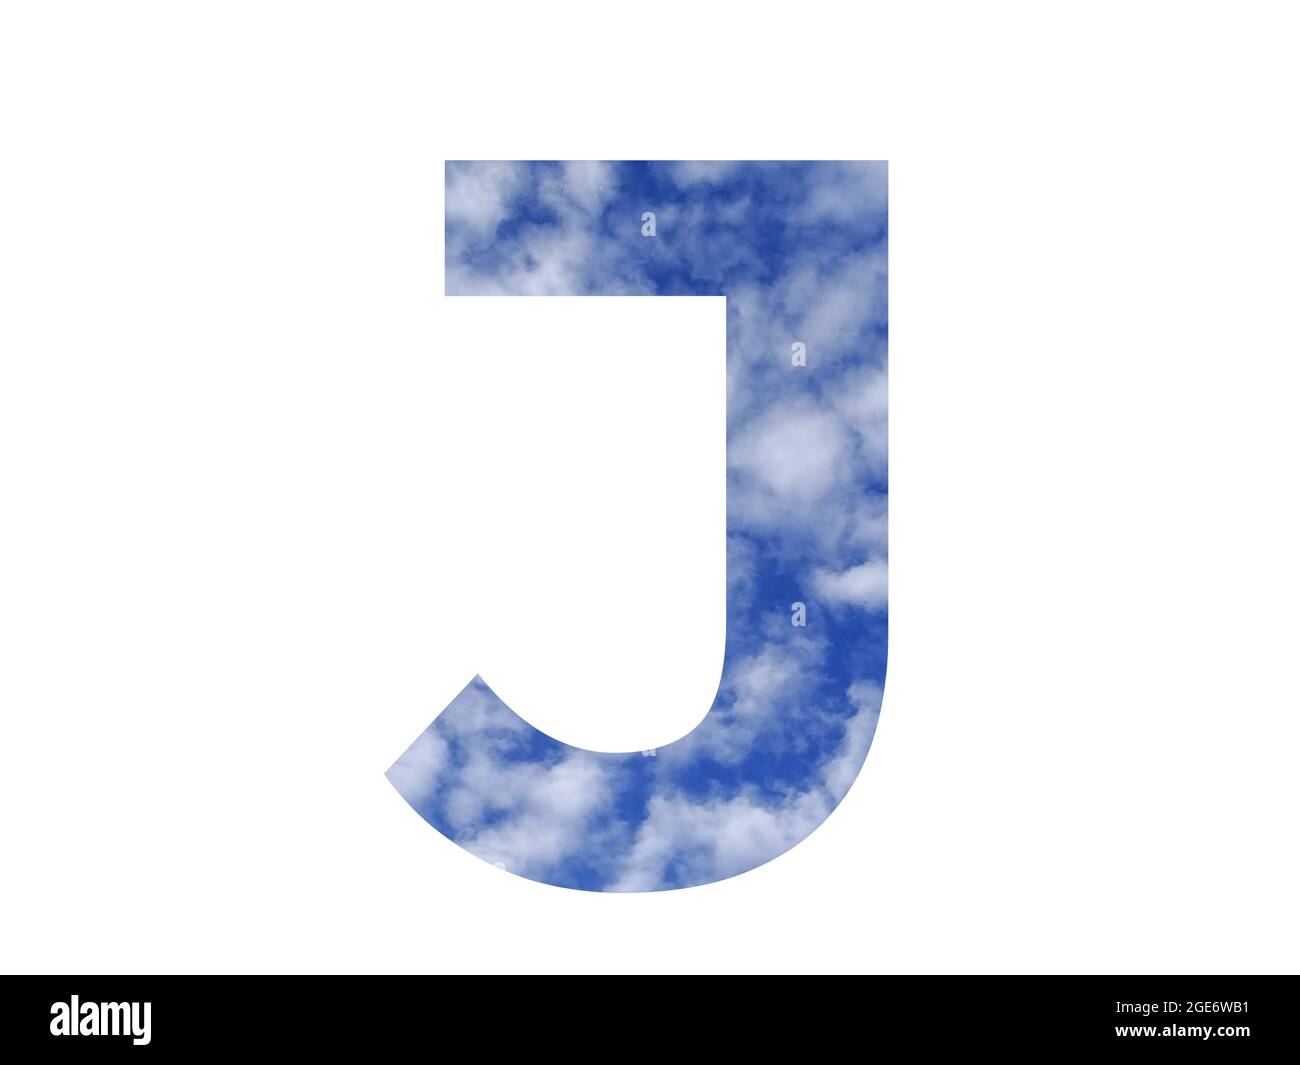 Buchstabe J des Alphabets mit blauem Himmel und weißen Wolken, isoliert auf weißem Hintergrund Stockfoto